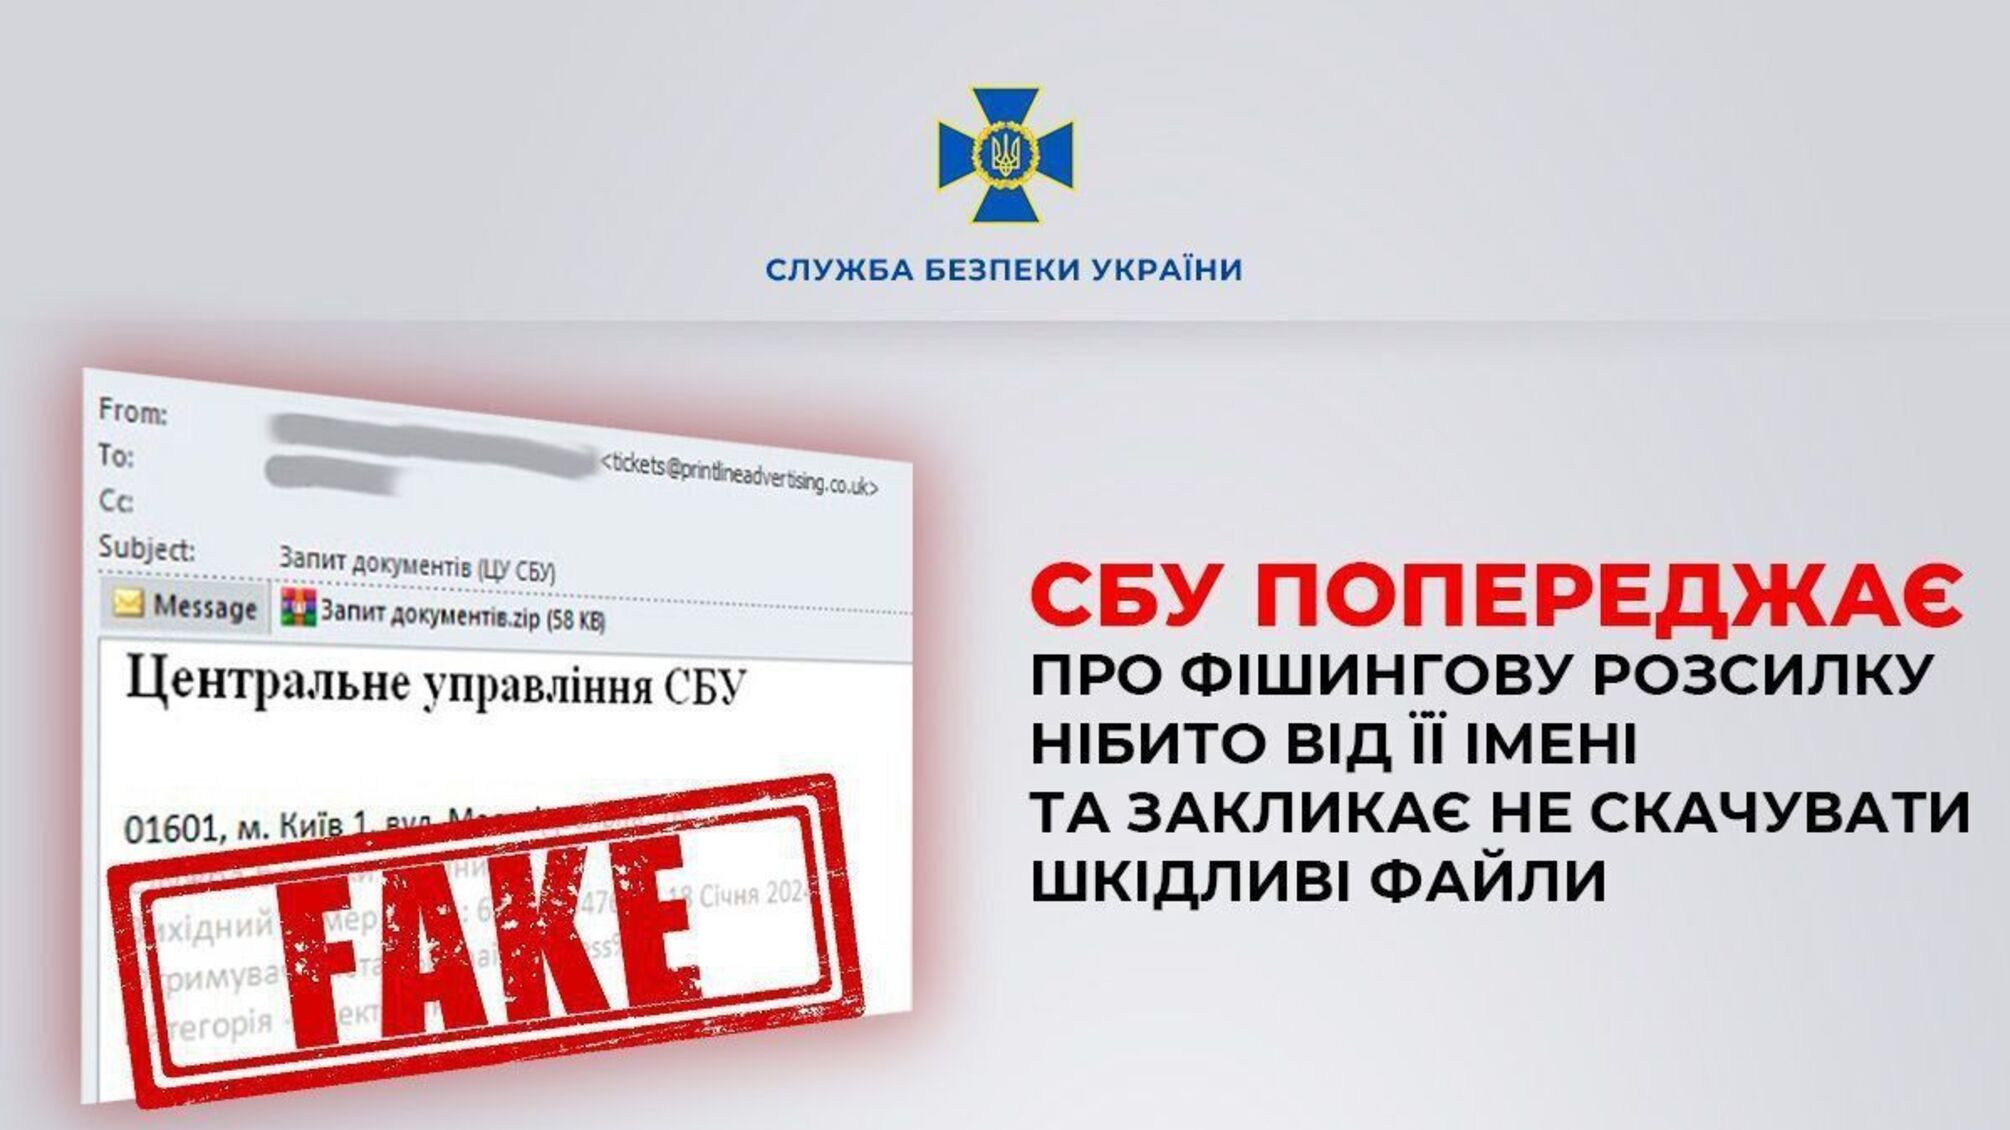 Українцям почали приходити небезпечні фішингові листи від СБУ